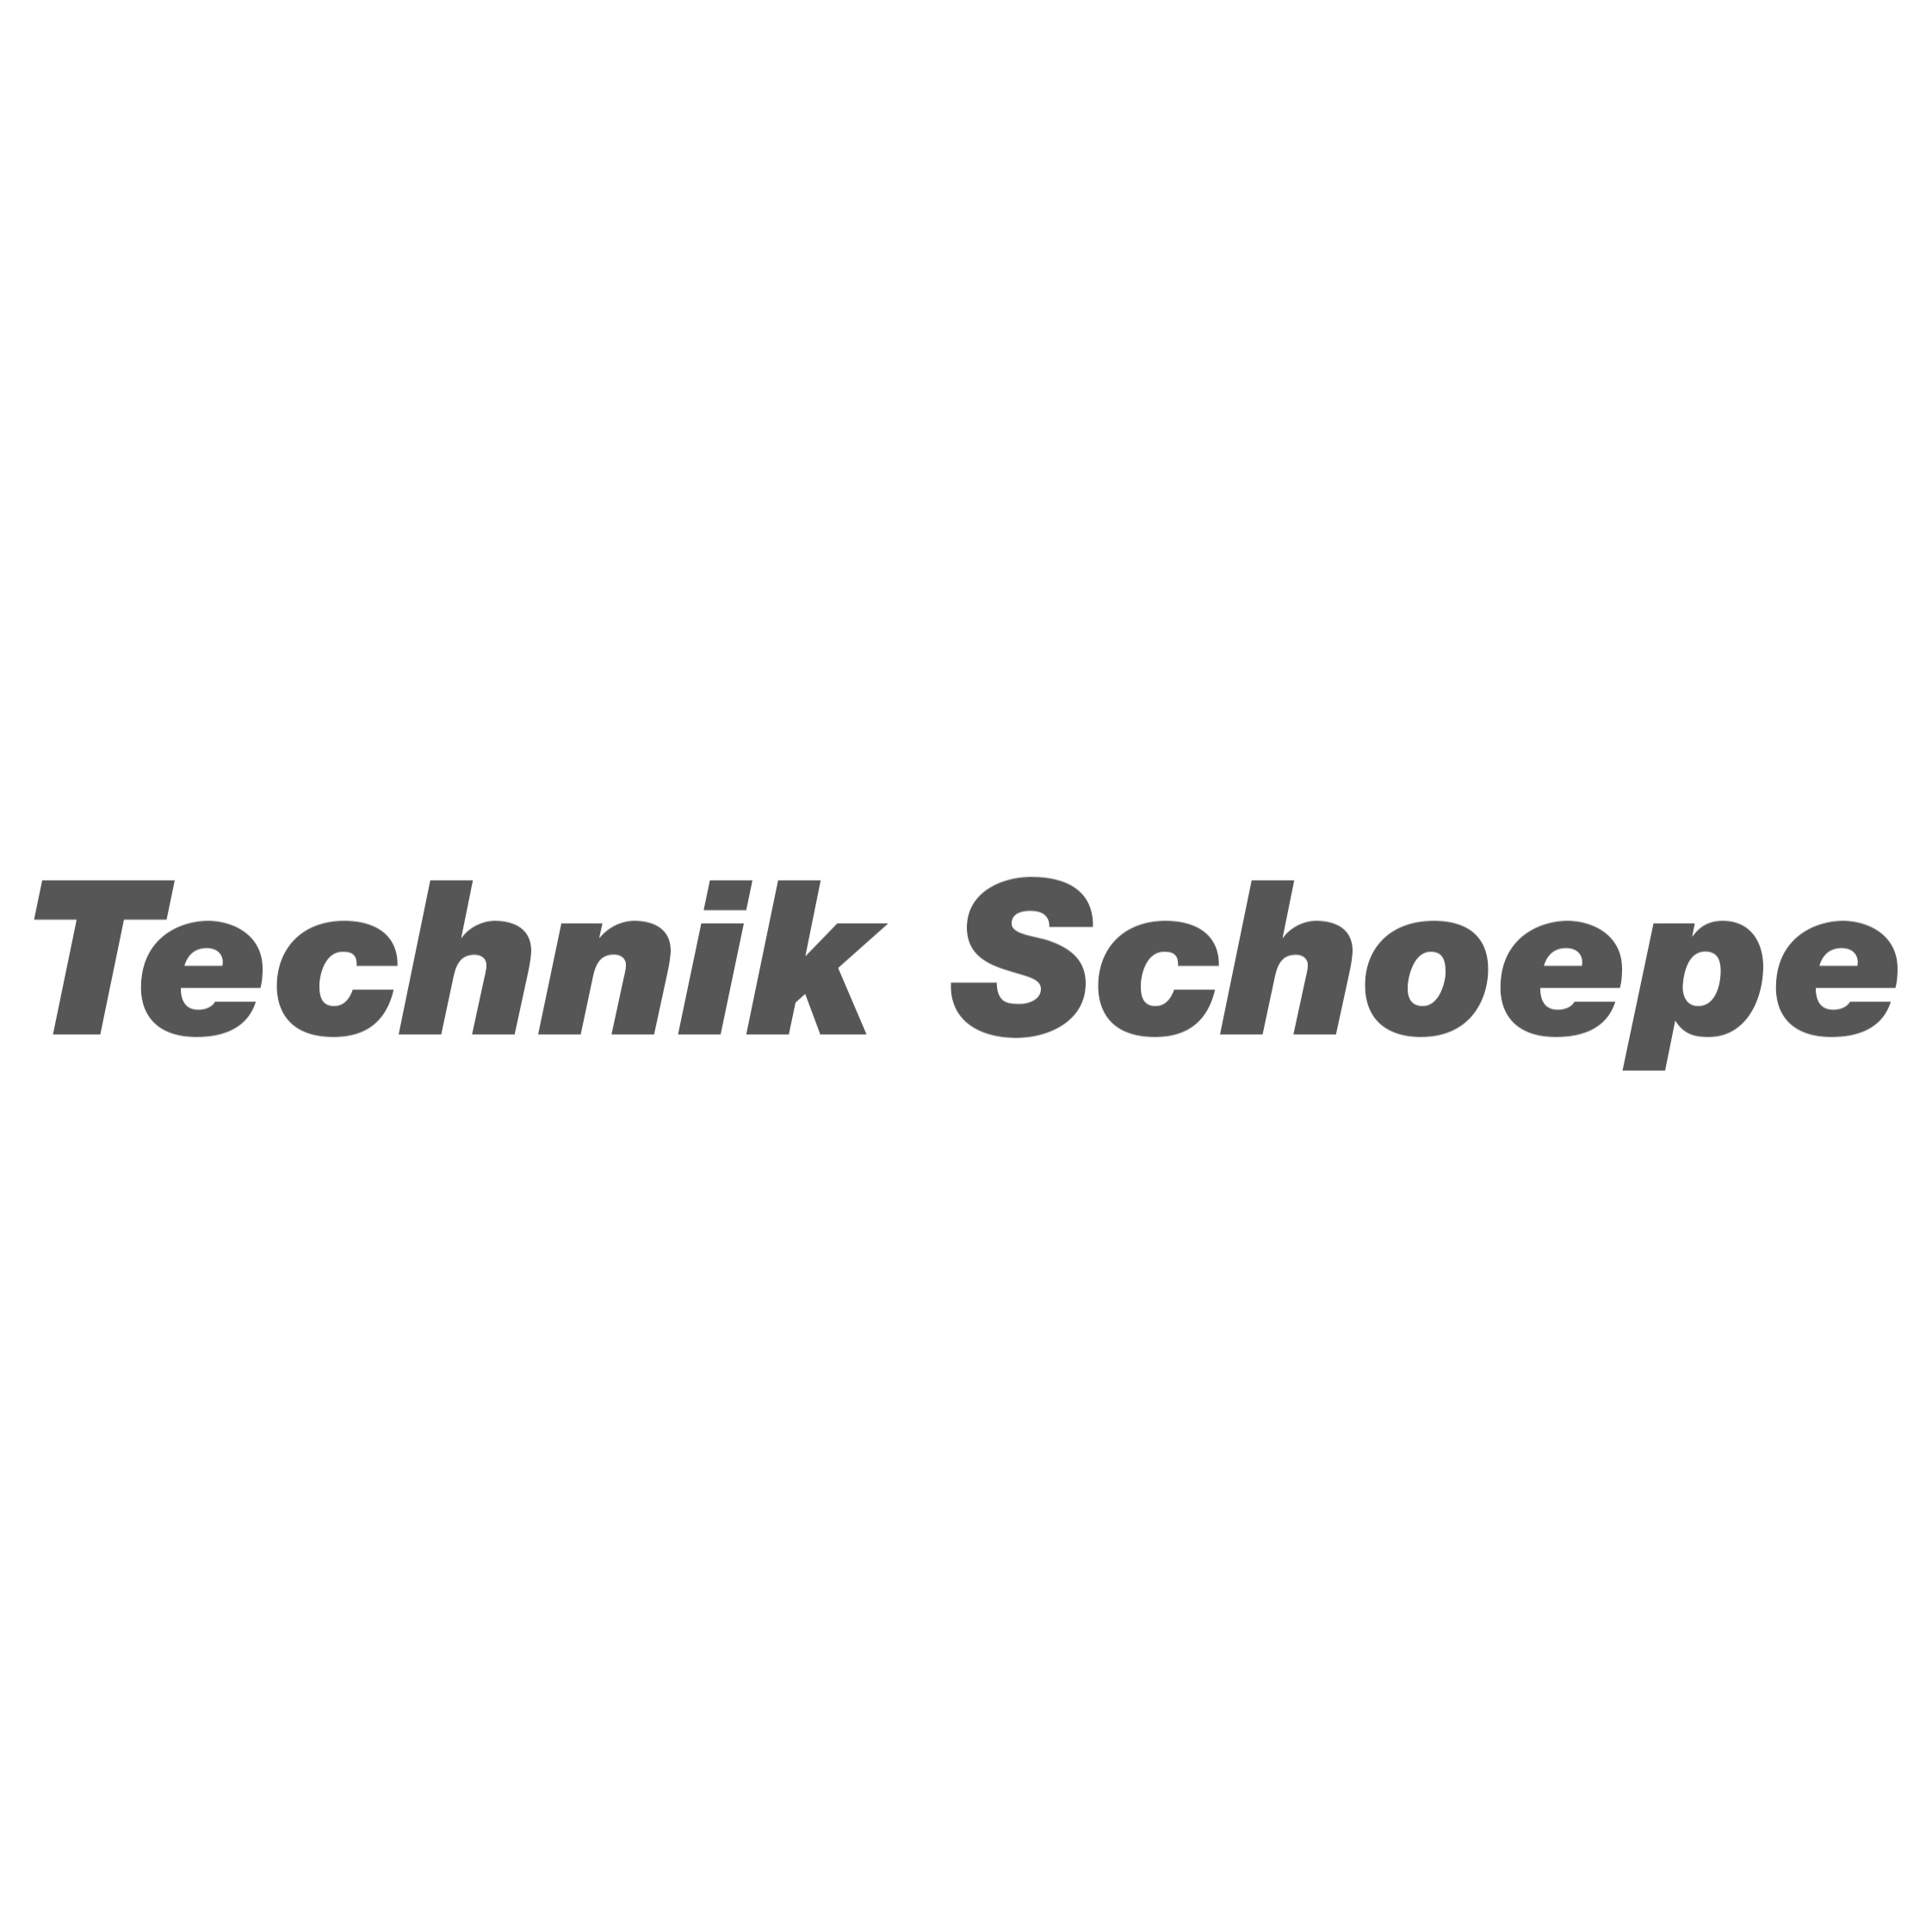 Technik Schoepe Logo